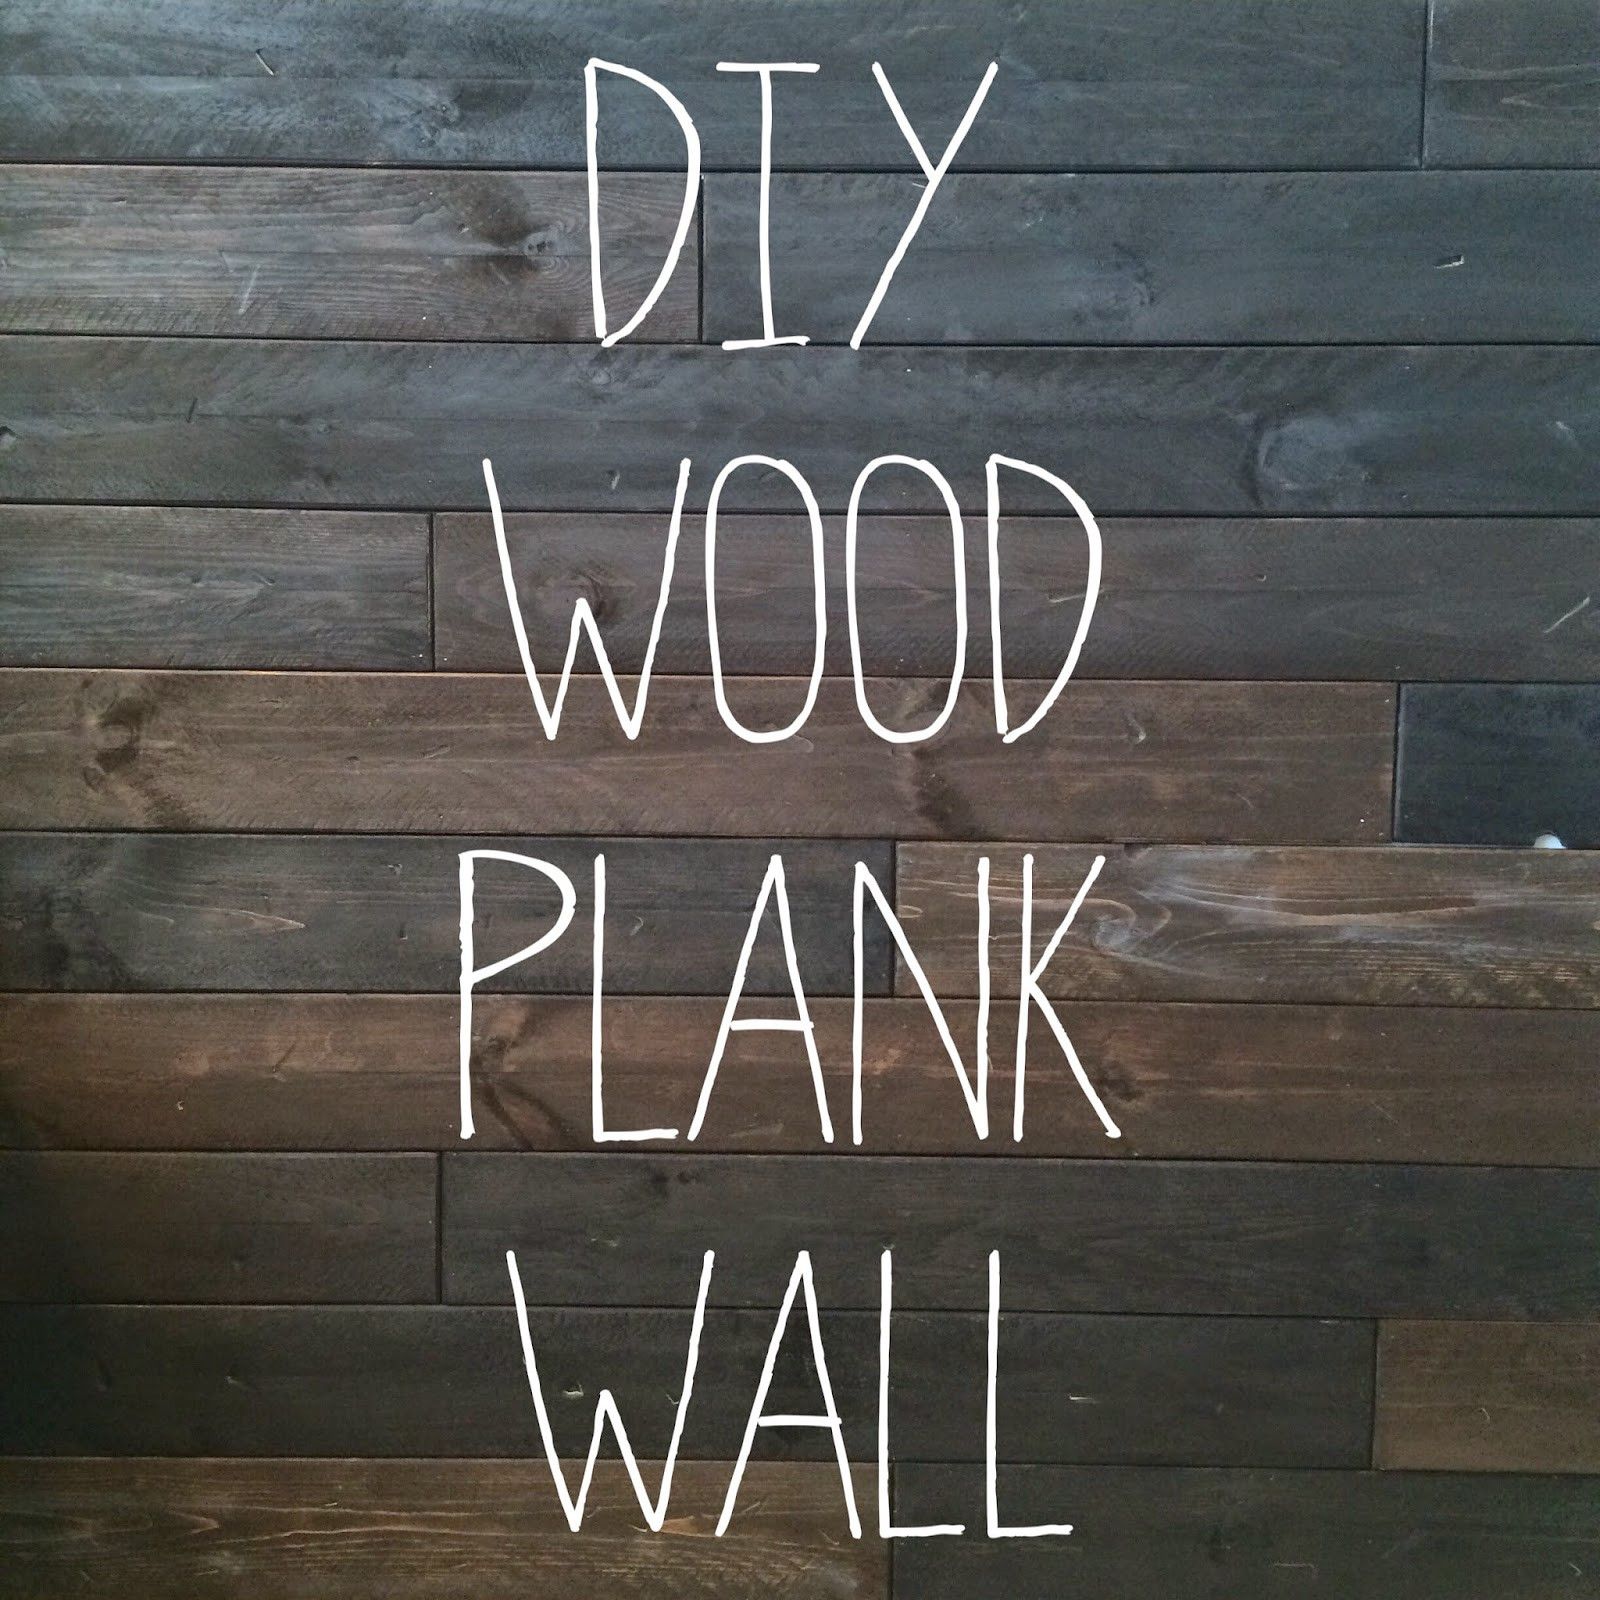 DIY Wood Plank Walls
 LeroyLime DIY Wood Wall